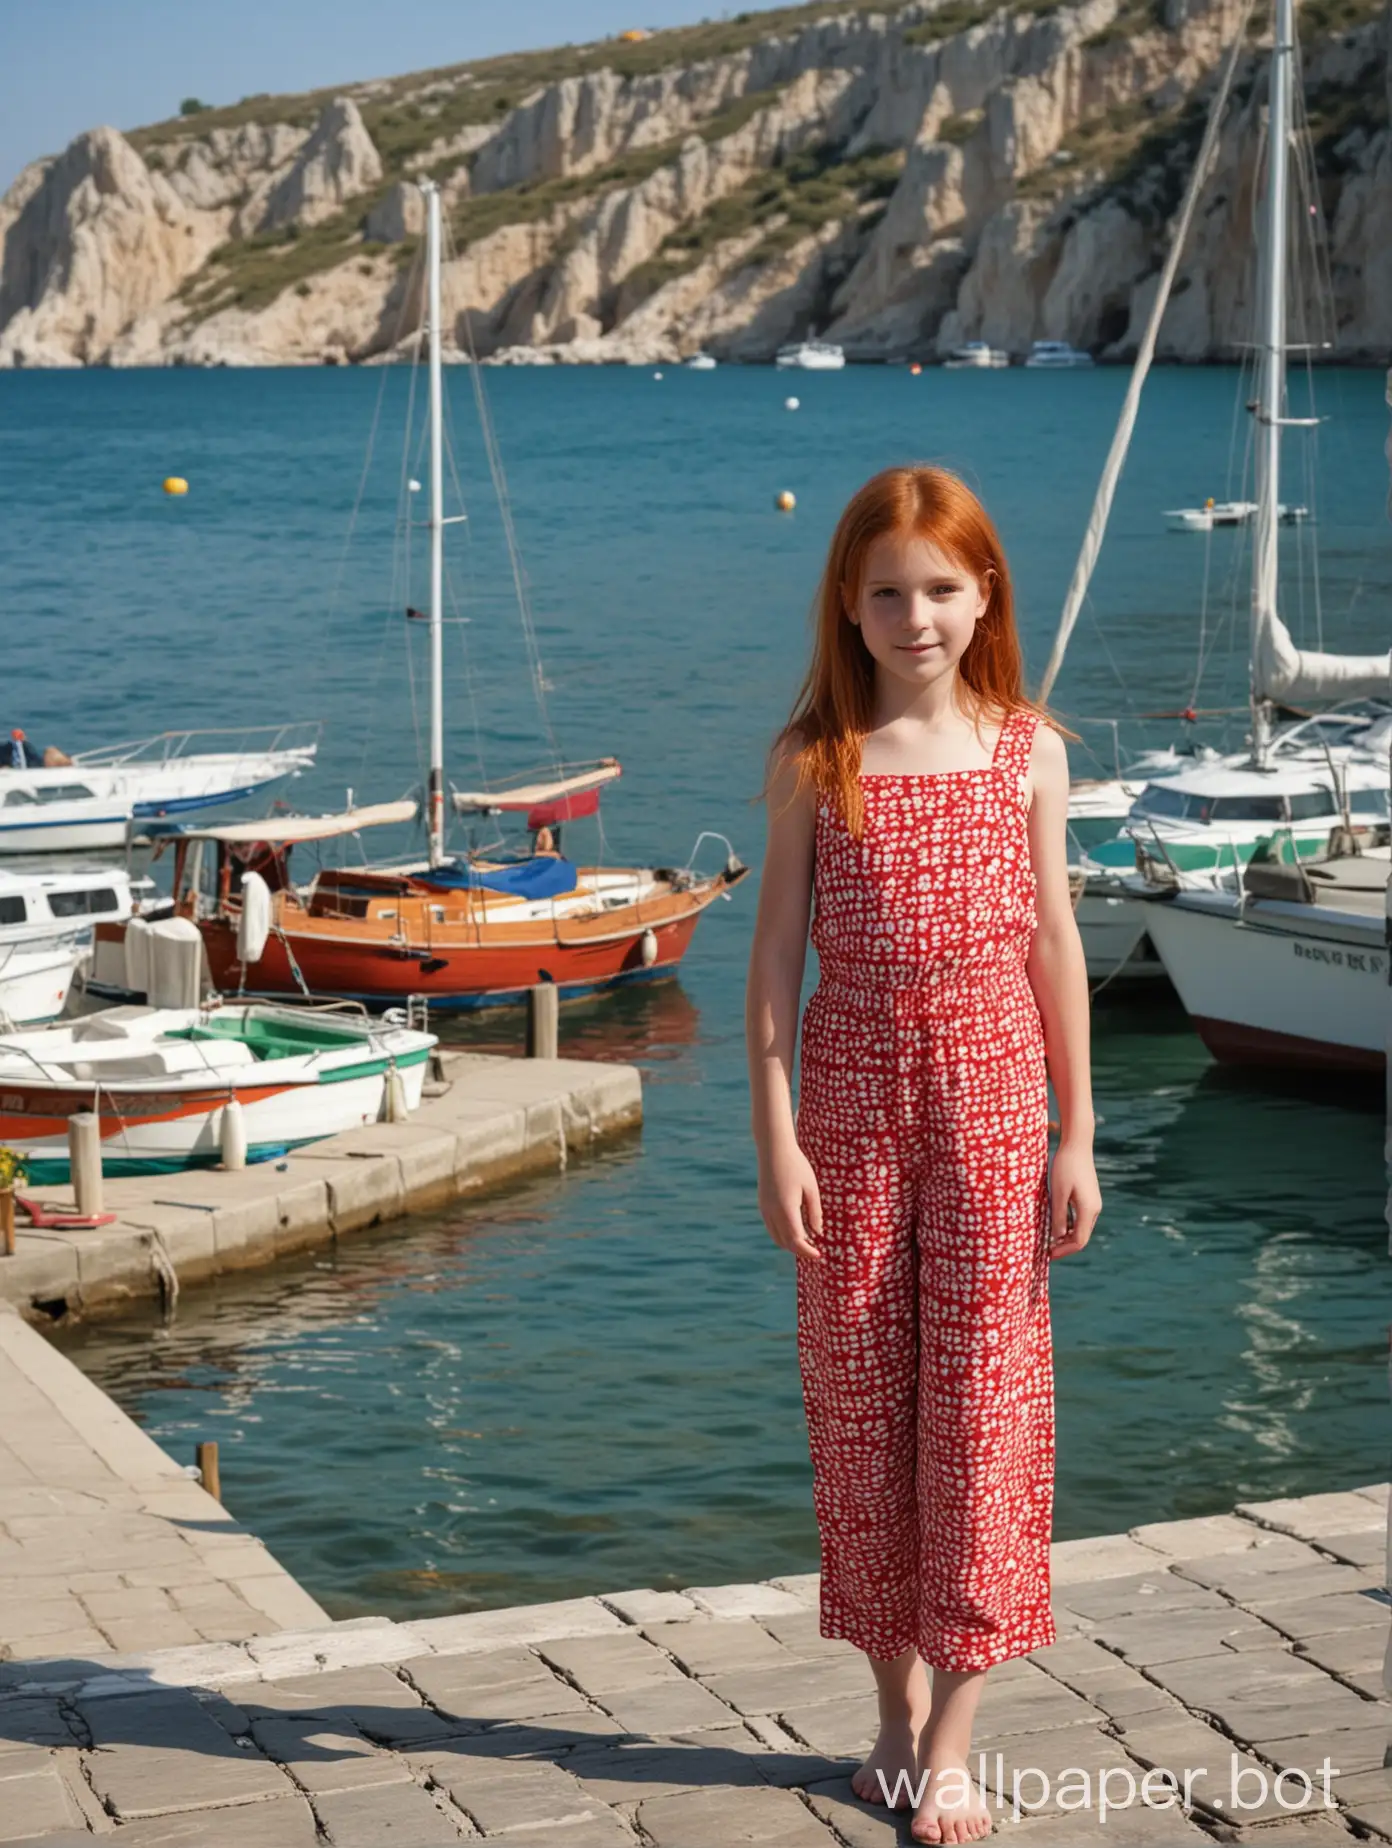 Крым, вид на набережную с лодками и яхтами, рыжеволосая девочка 10 лет в комбинезоне на голое тело, в полный рост